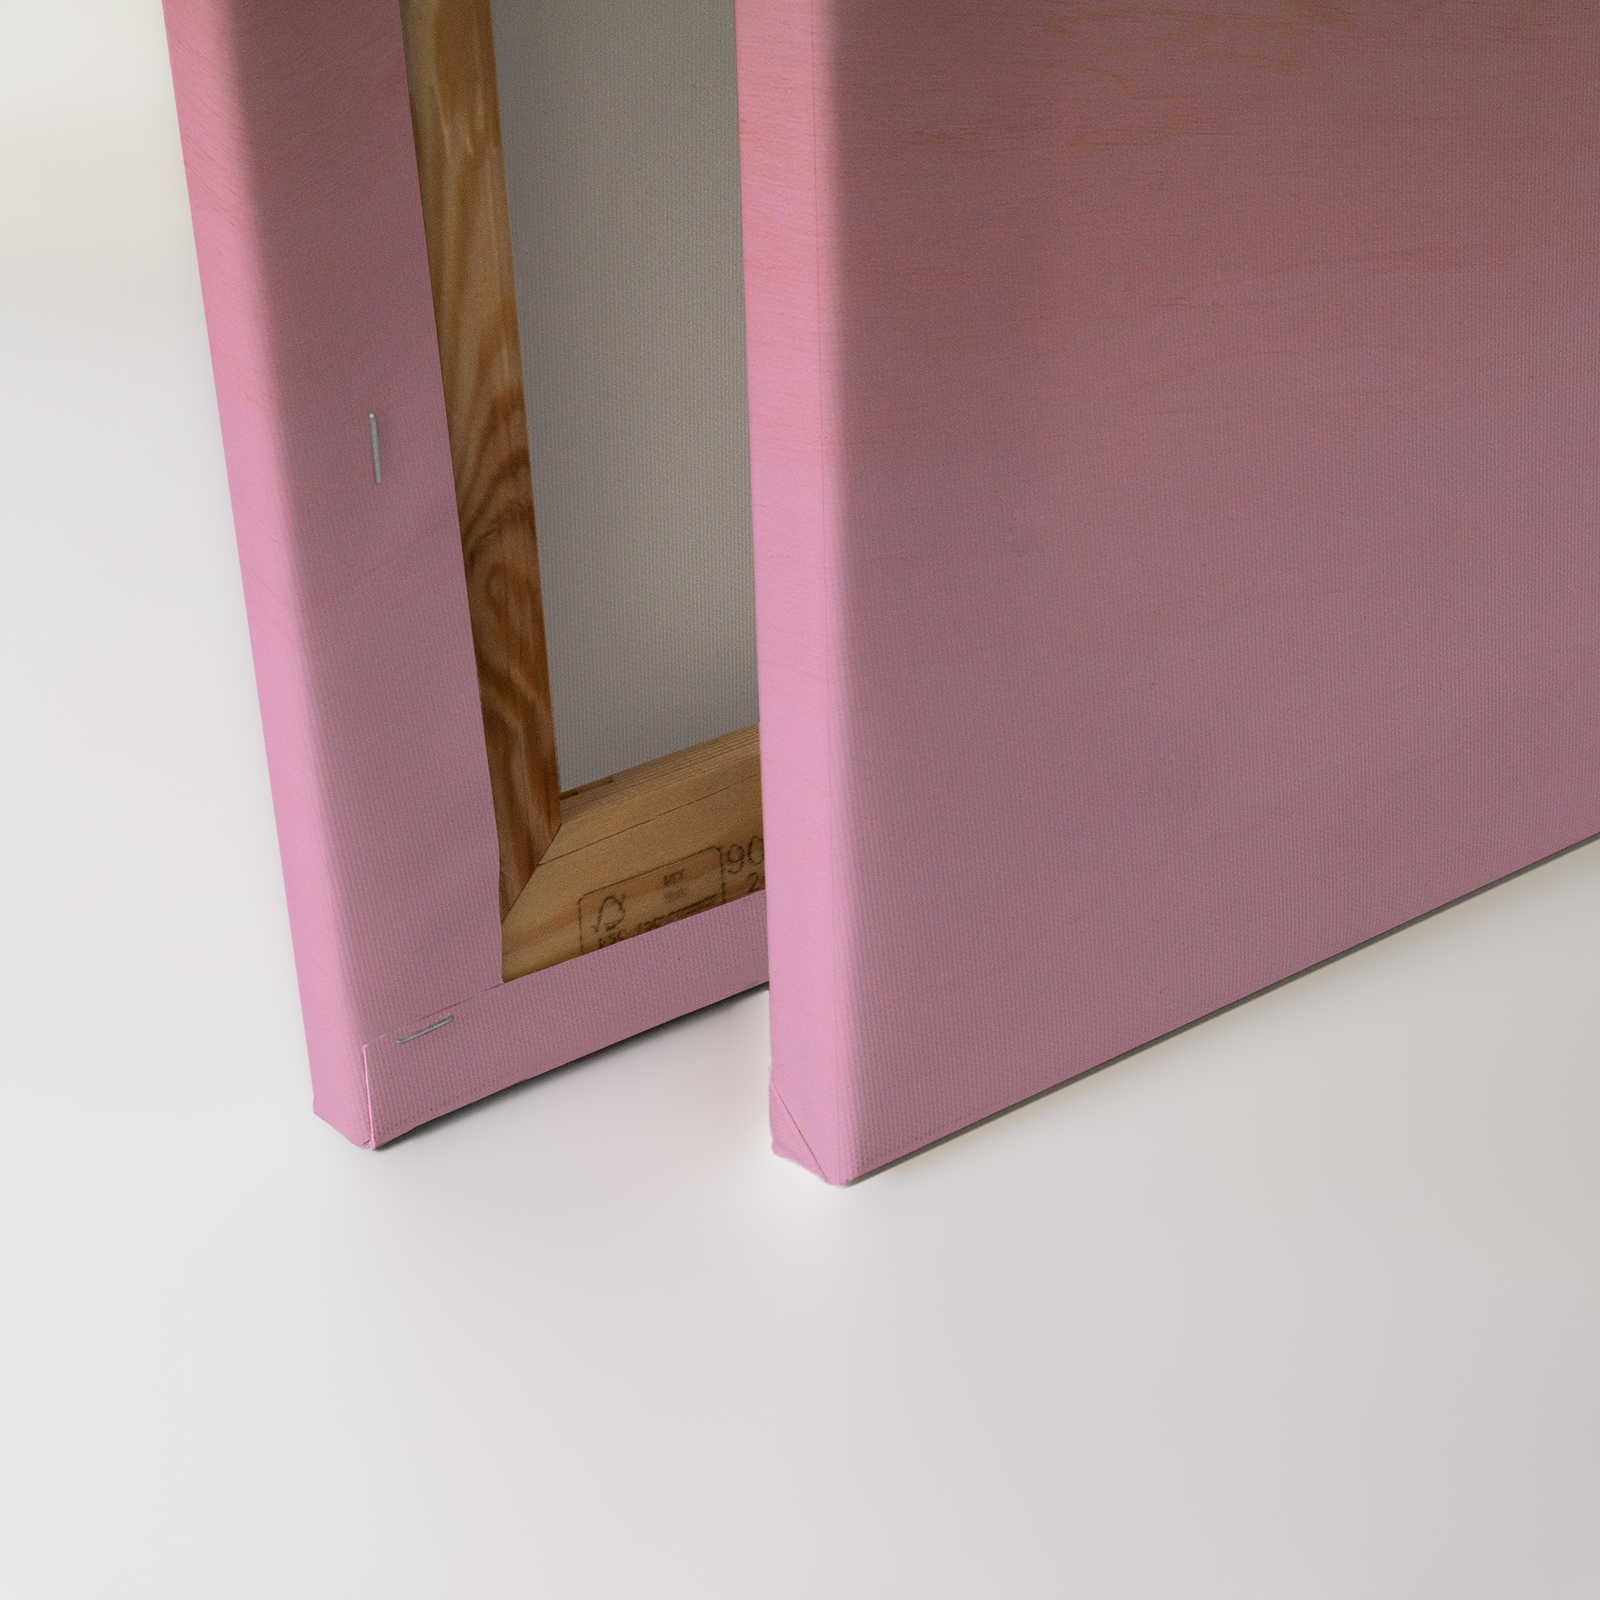             Workshop 1 - Pittura su tela Effetto Ombre rosa e venature del legno - 0,90 m x 0,60 m
        